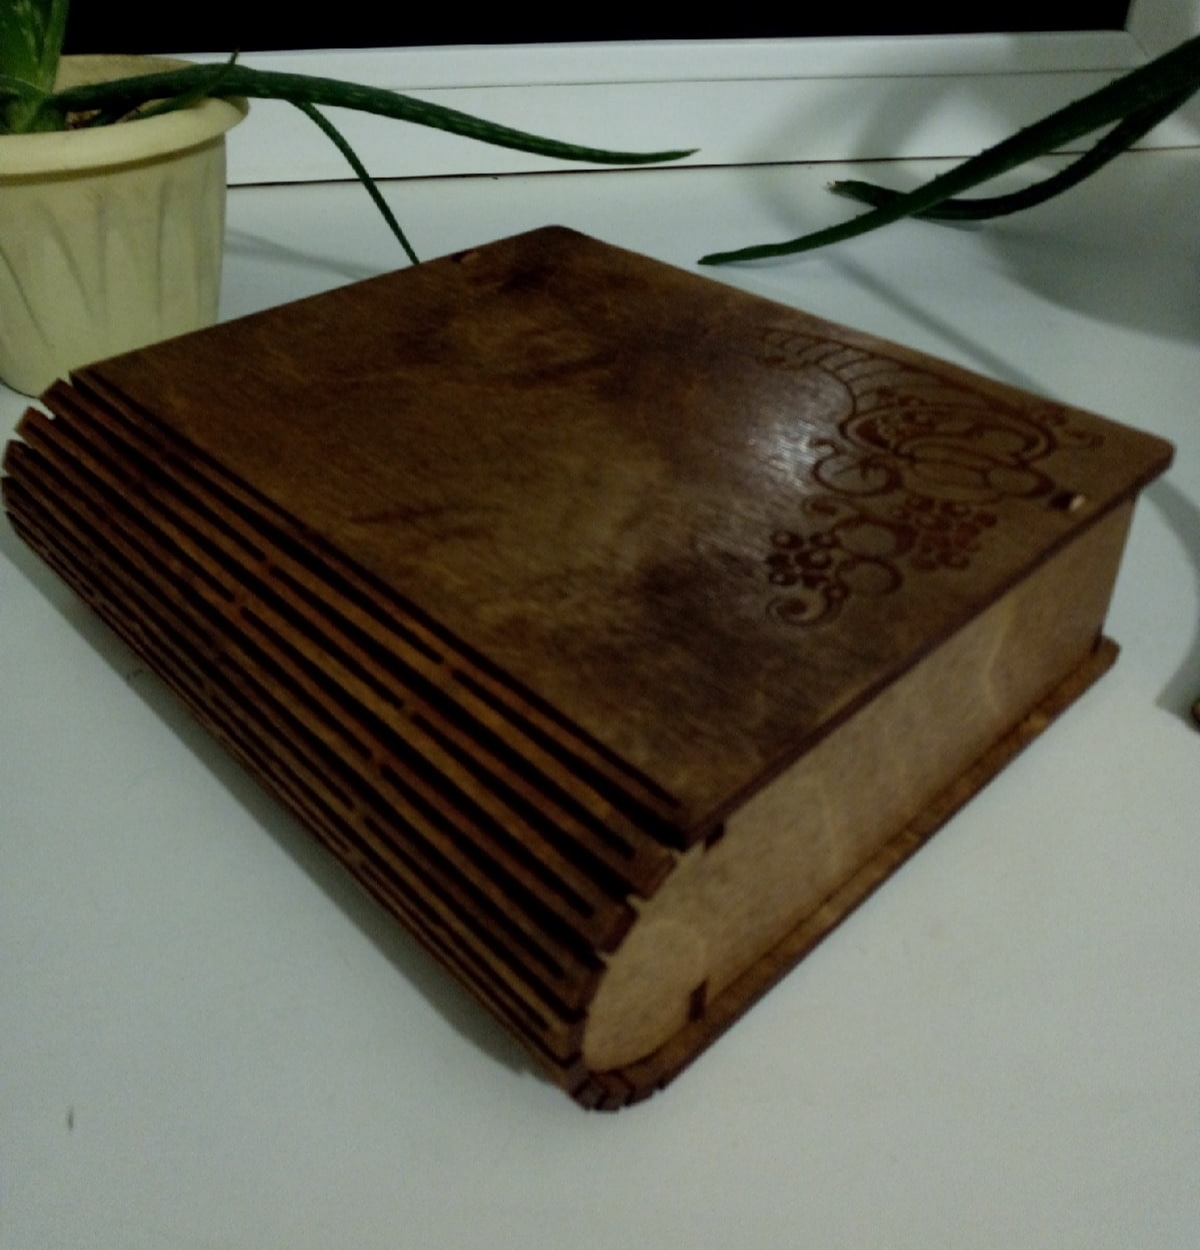 Lasergeschnittene Buchkiste aus Holz